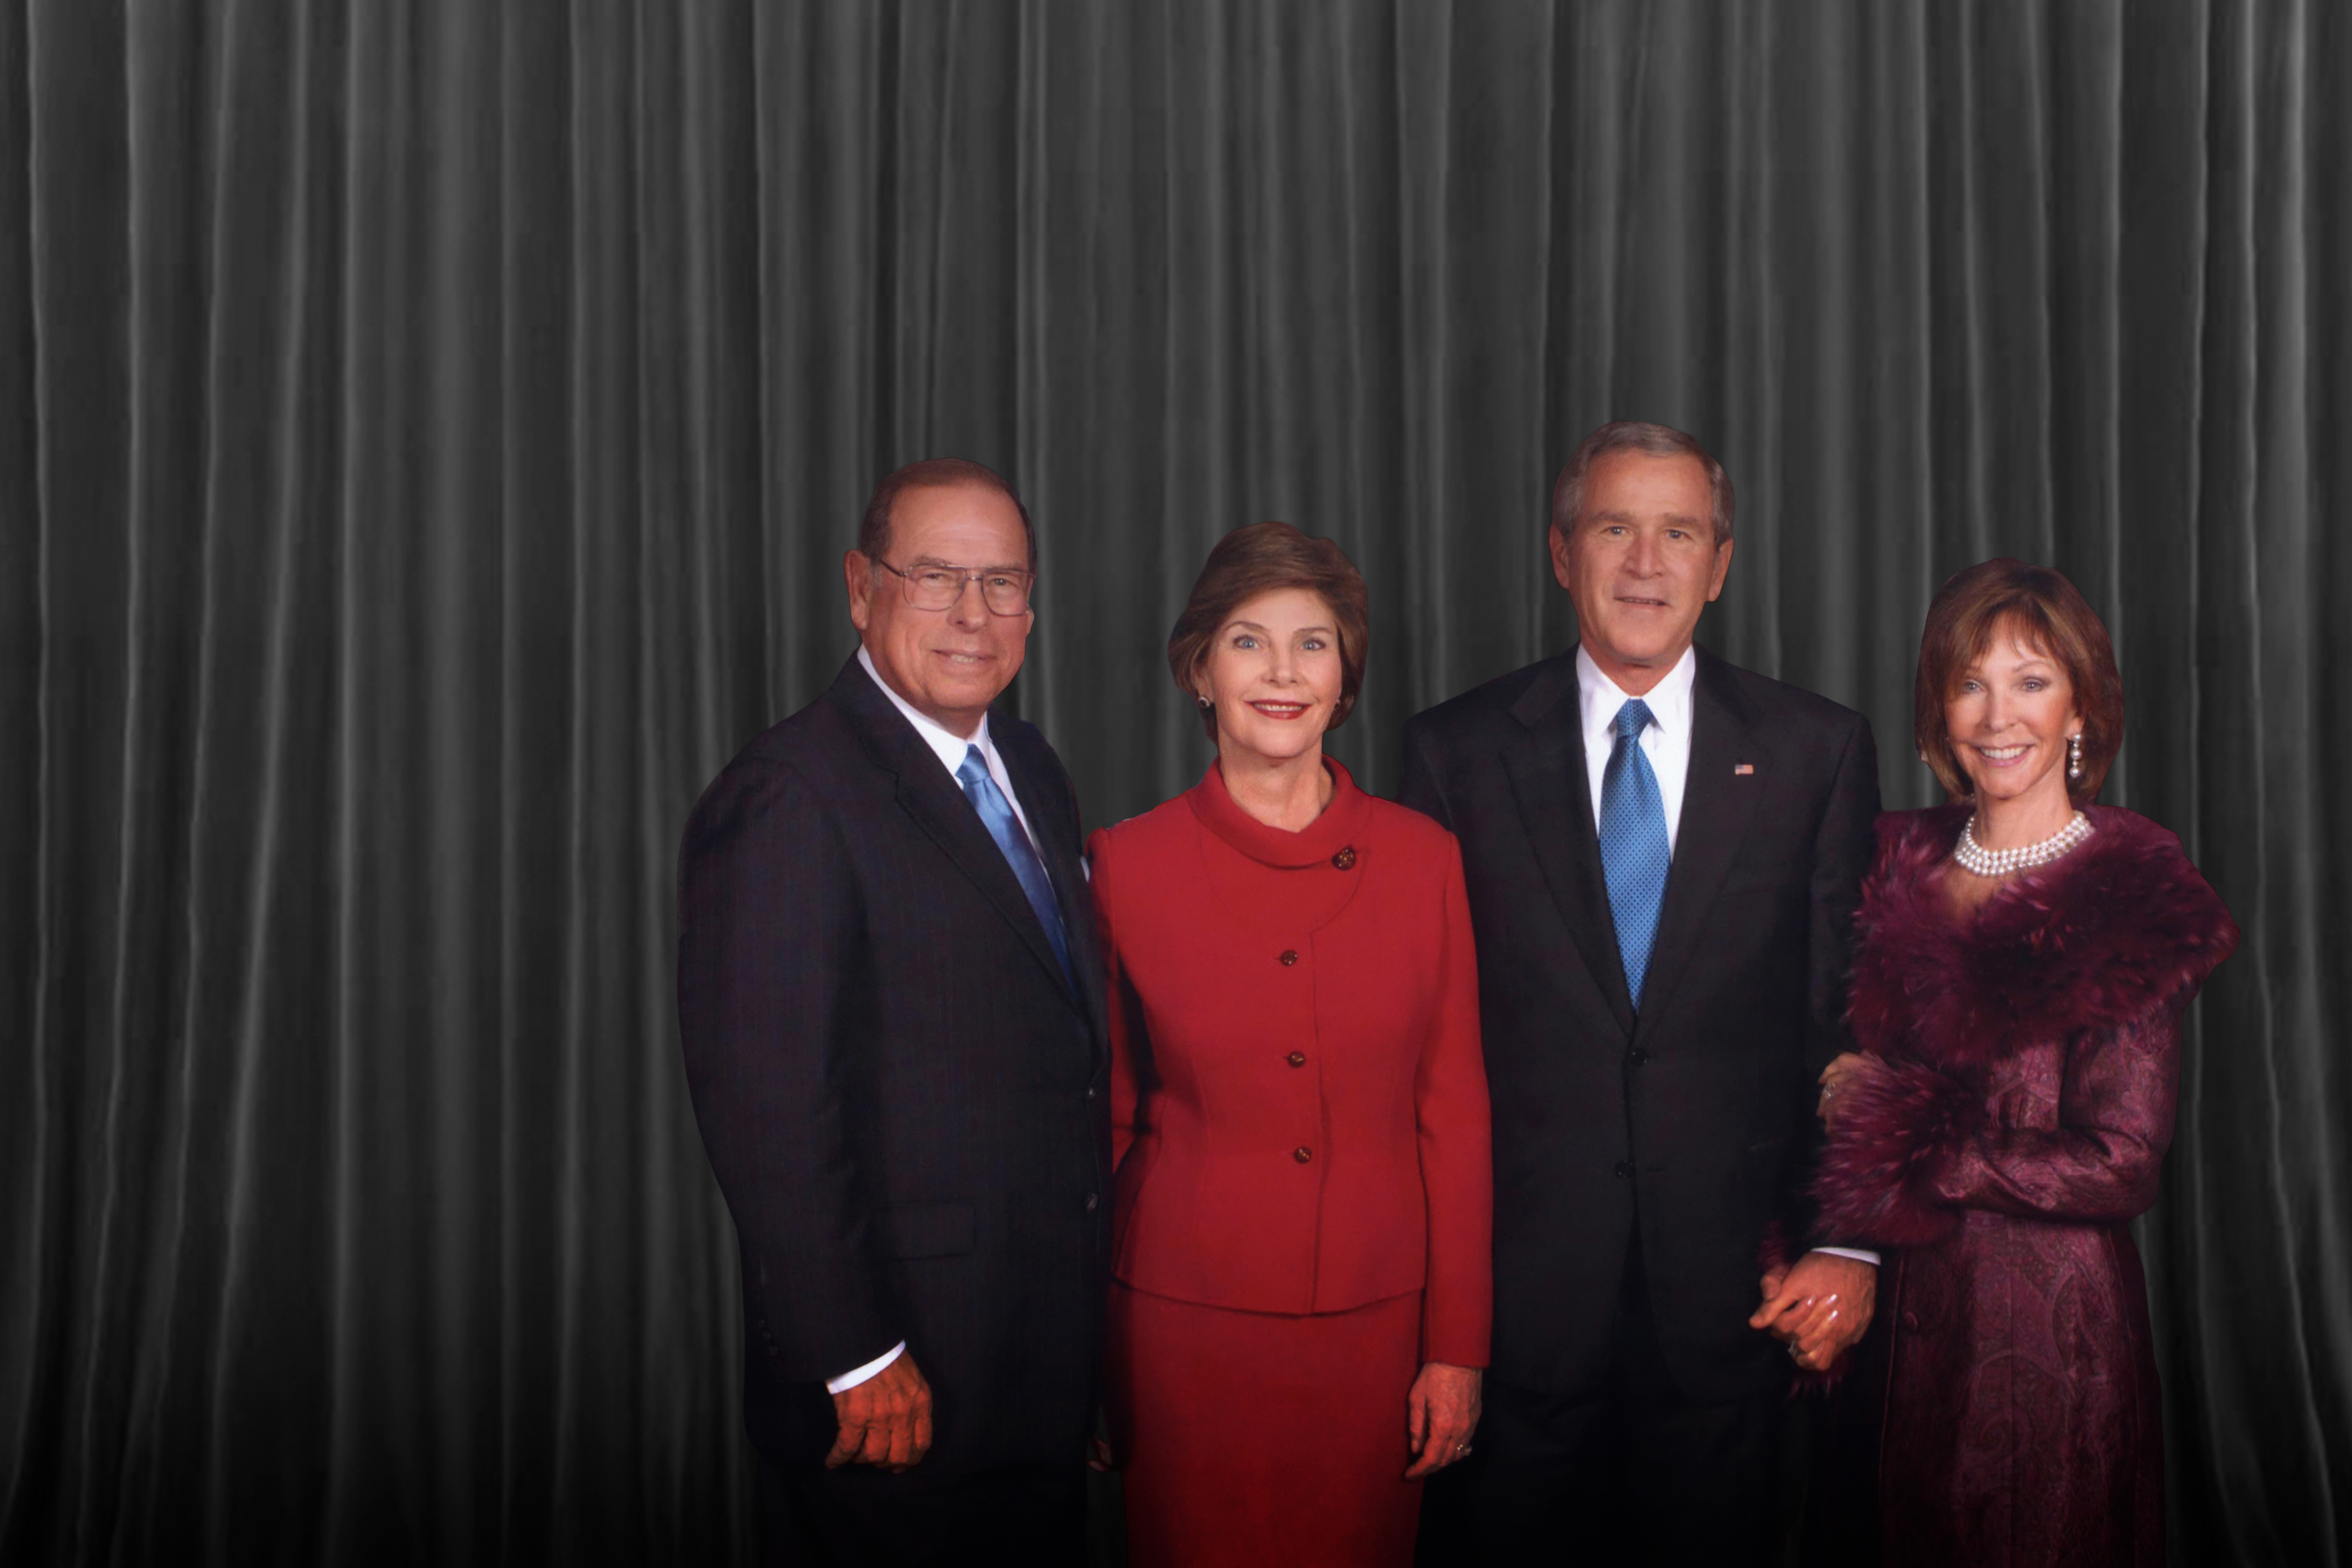 Argyros and Bush families portrait